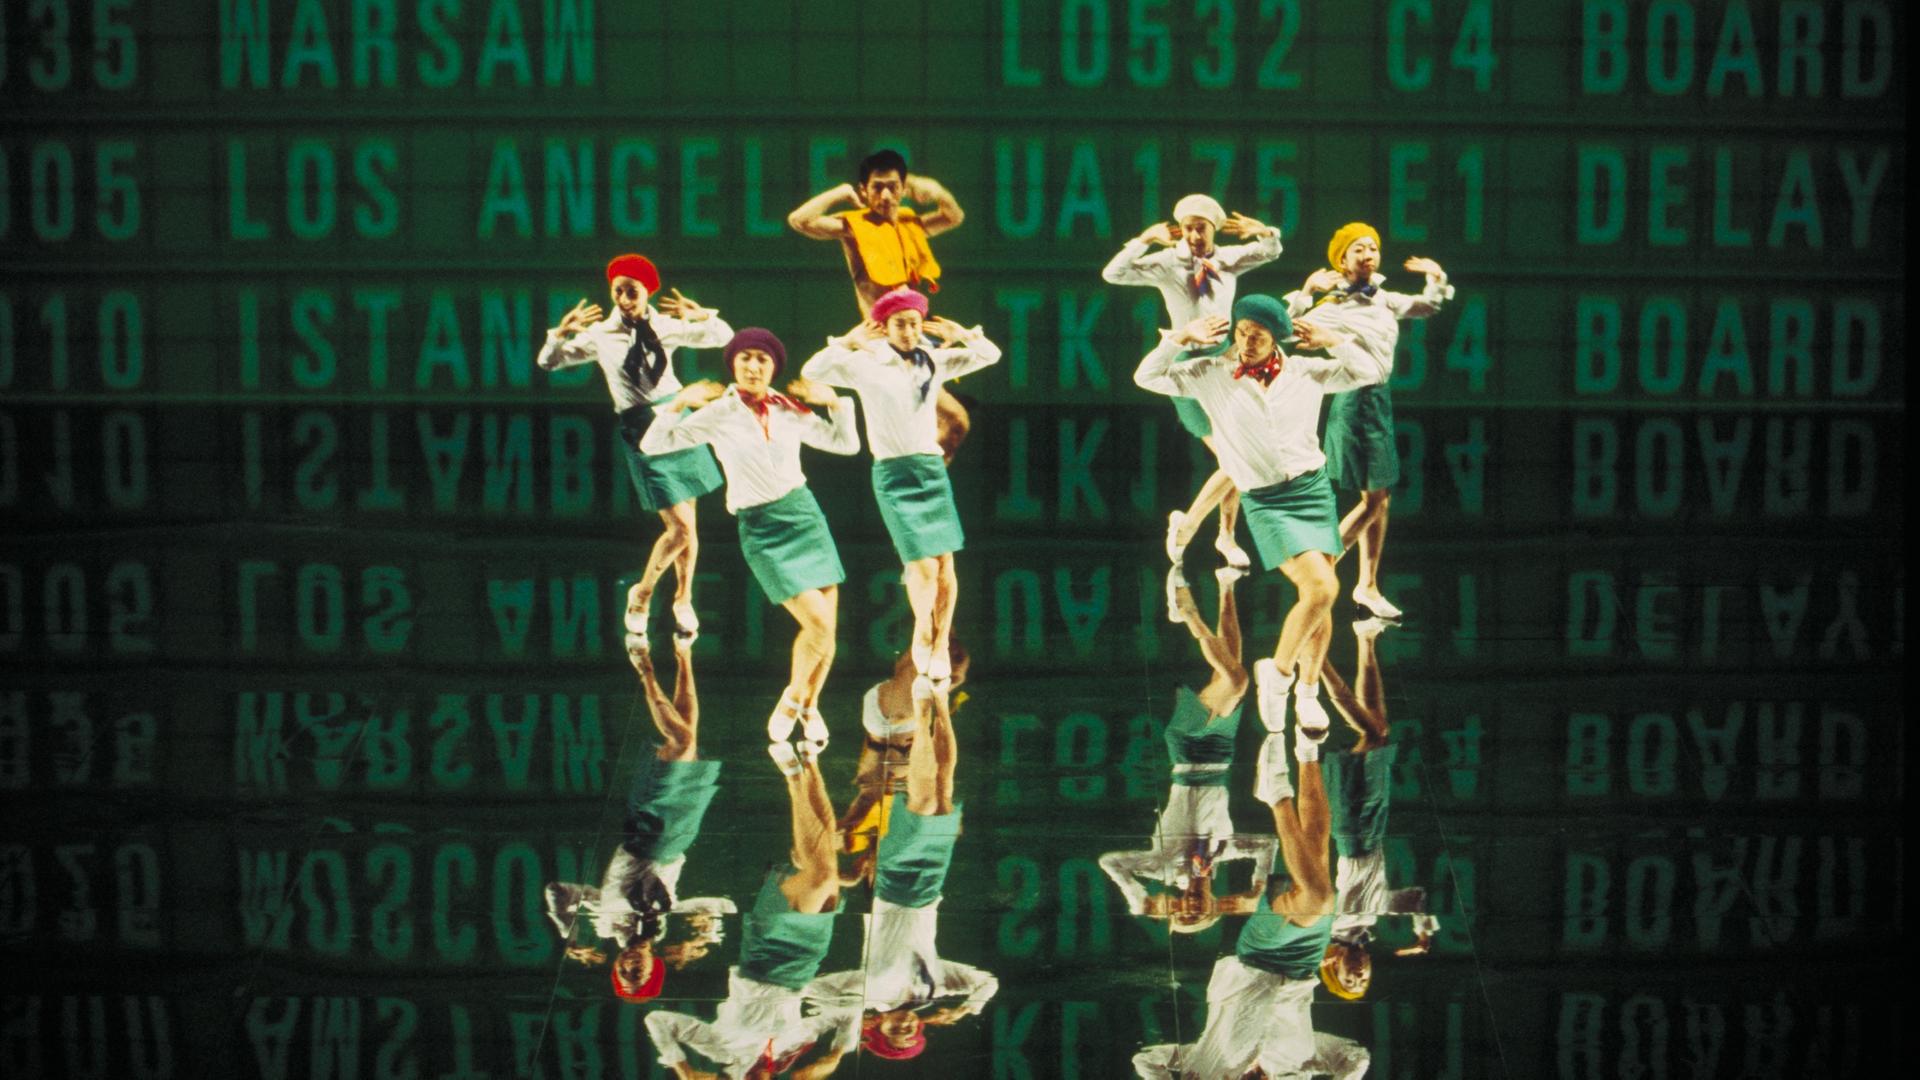 Sieben Personen, die an Flugbegleiter erinnen, stehen vor einer Leinwand. An der Leinwand sind in großen Buchstaben Flugnummern und Ziele angeschlagen. Das Bild ist Teil einer Videoinstallation eines japanischen Künstlerkollektivs.